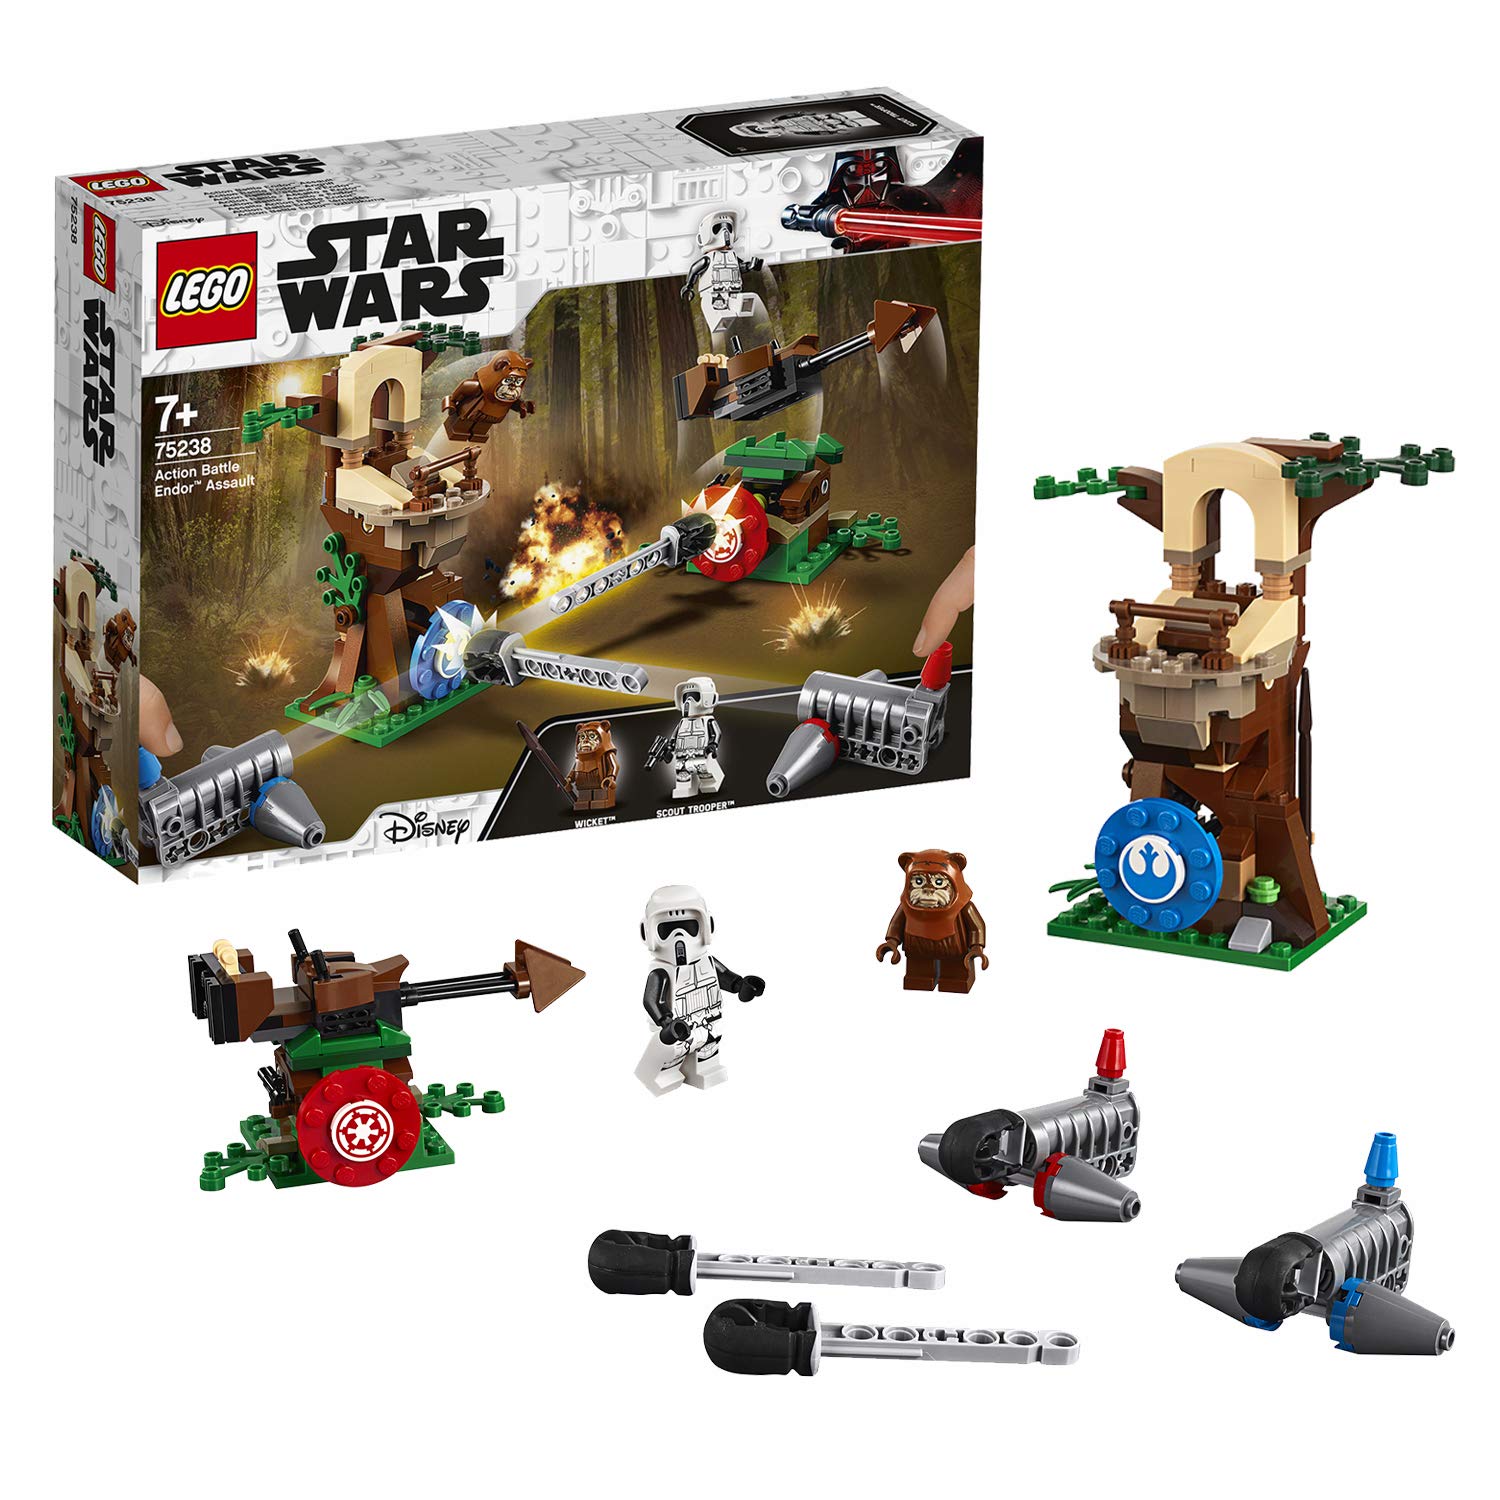 LEGO Star Wars Asalto a Endor solo 20,18€